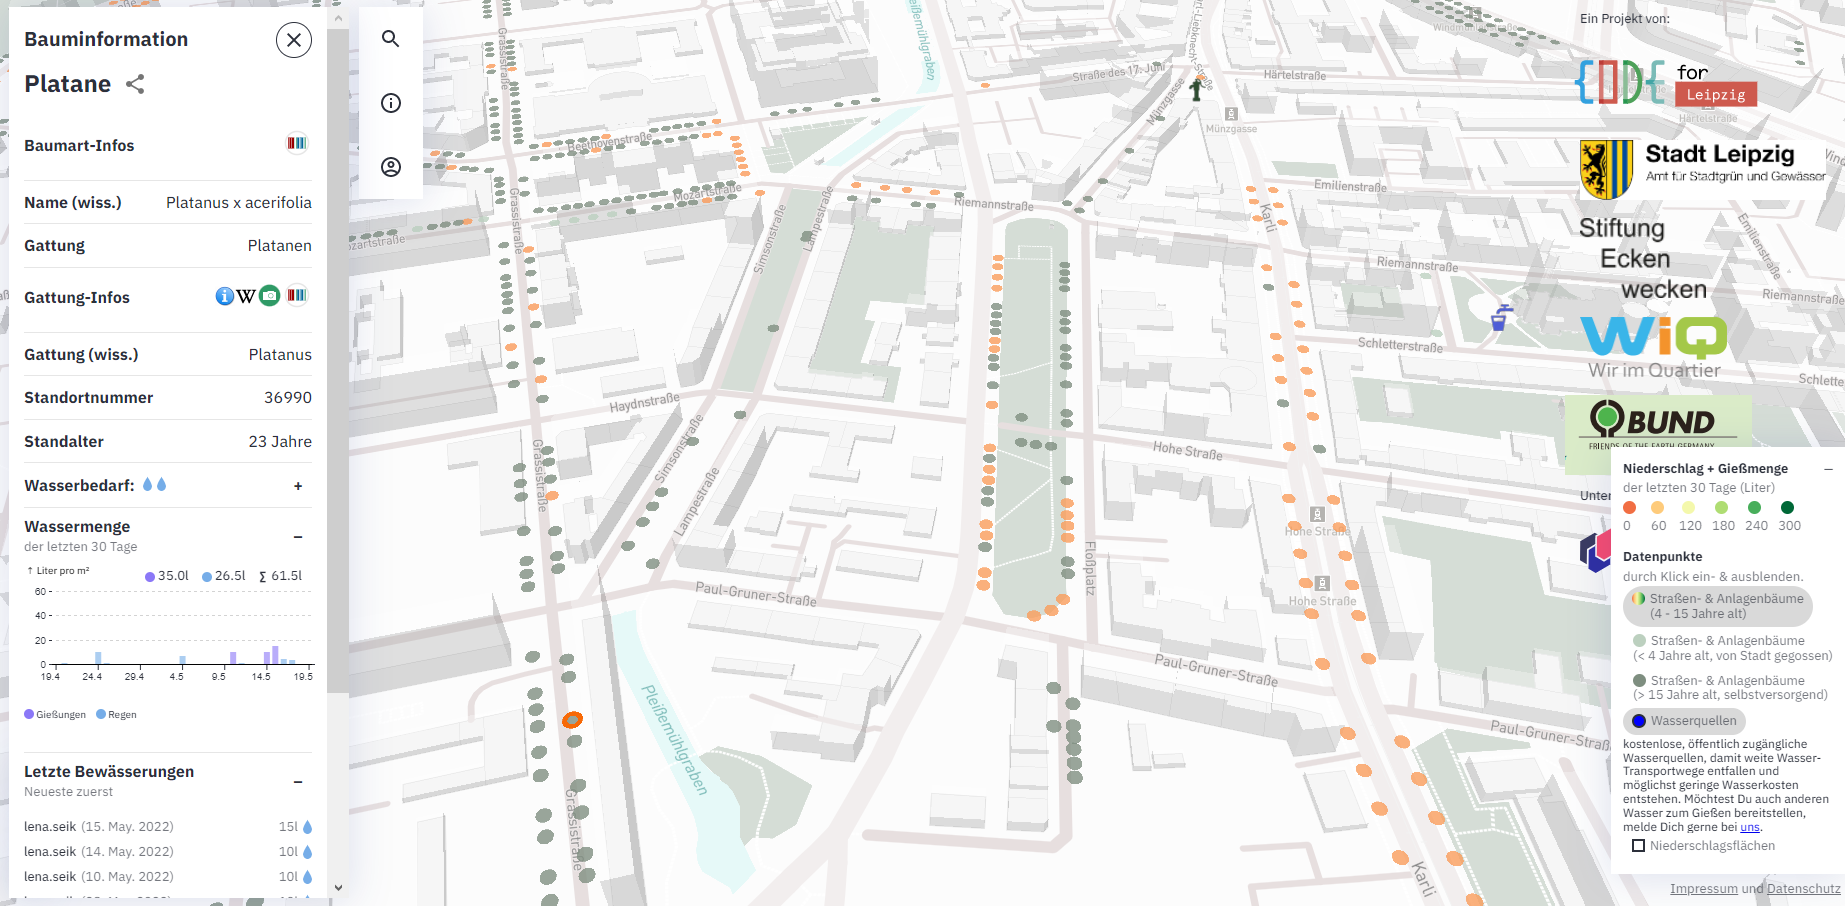 Ansicht aus der App "Leipzig giesst", die die Positionen der Straßenbäume auf einer Karte als Punkte zeigt, die je nach Gießbedürftigkeit mit entsprechenden Farben dargestellt sind